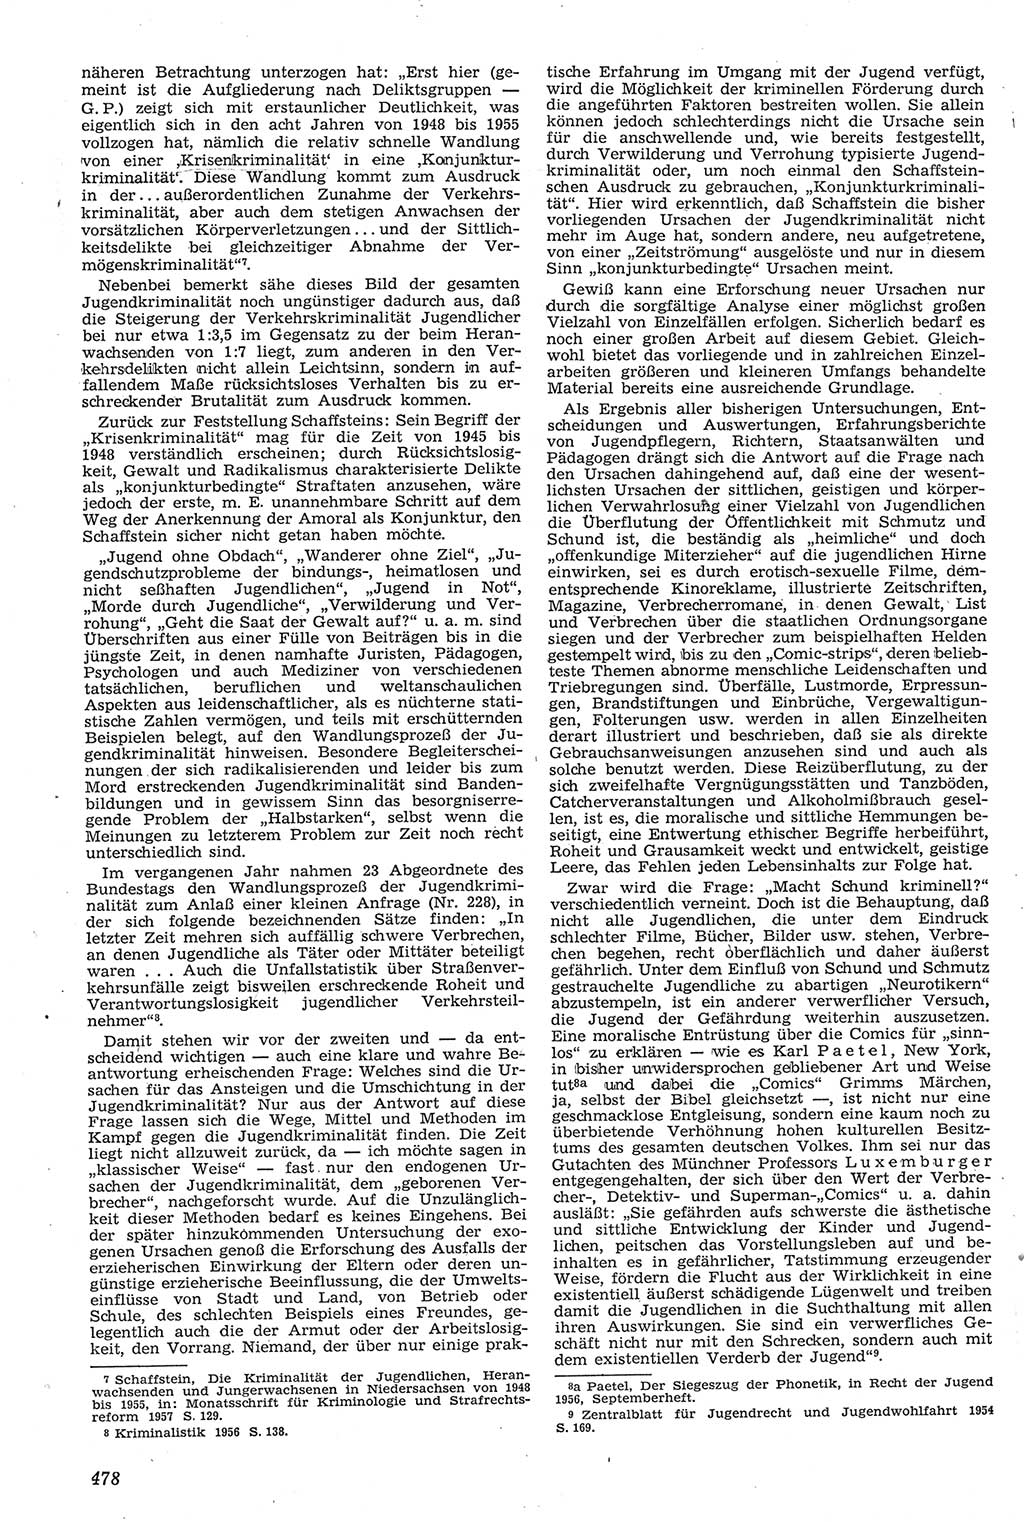 Neue Justiz (NJ), Zeitschrift für Recht und Rechtswissenschaft [Deutsche Demokratische Republik (DDR)], 11. Jahrgang 1957, Seite 478 (NJ DDR 1957, S. 478)